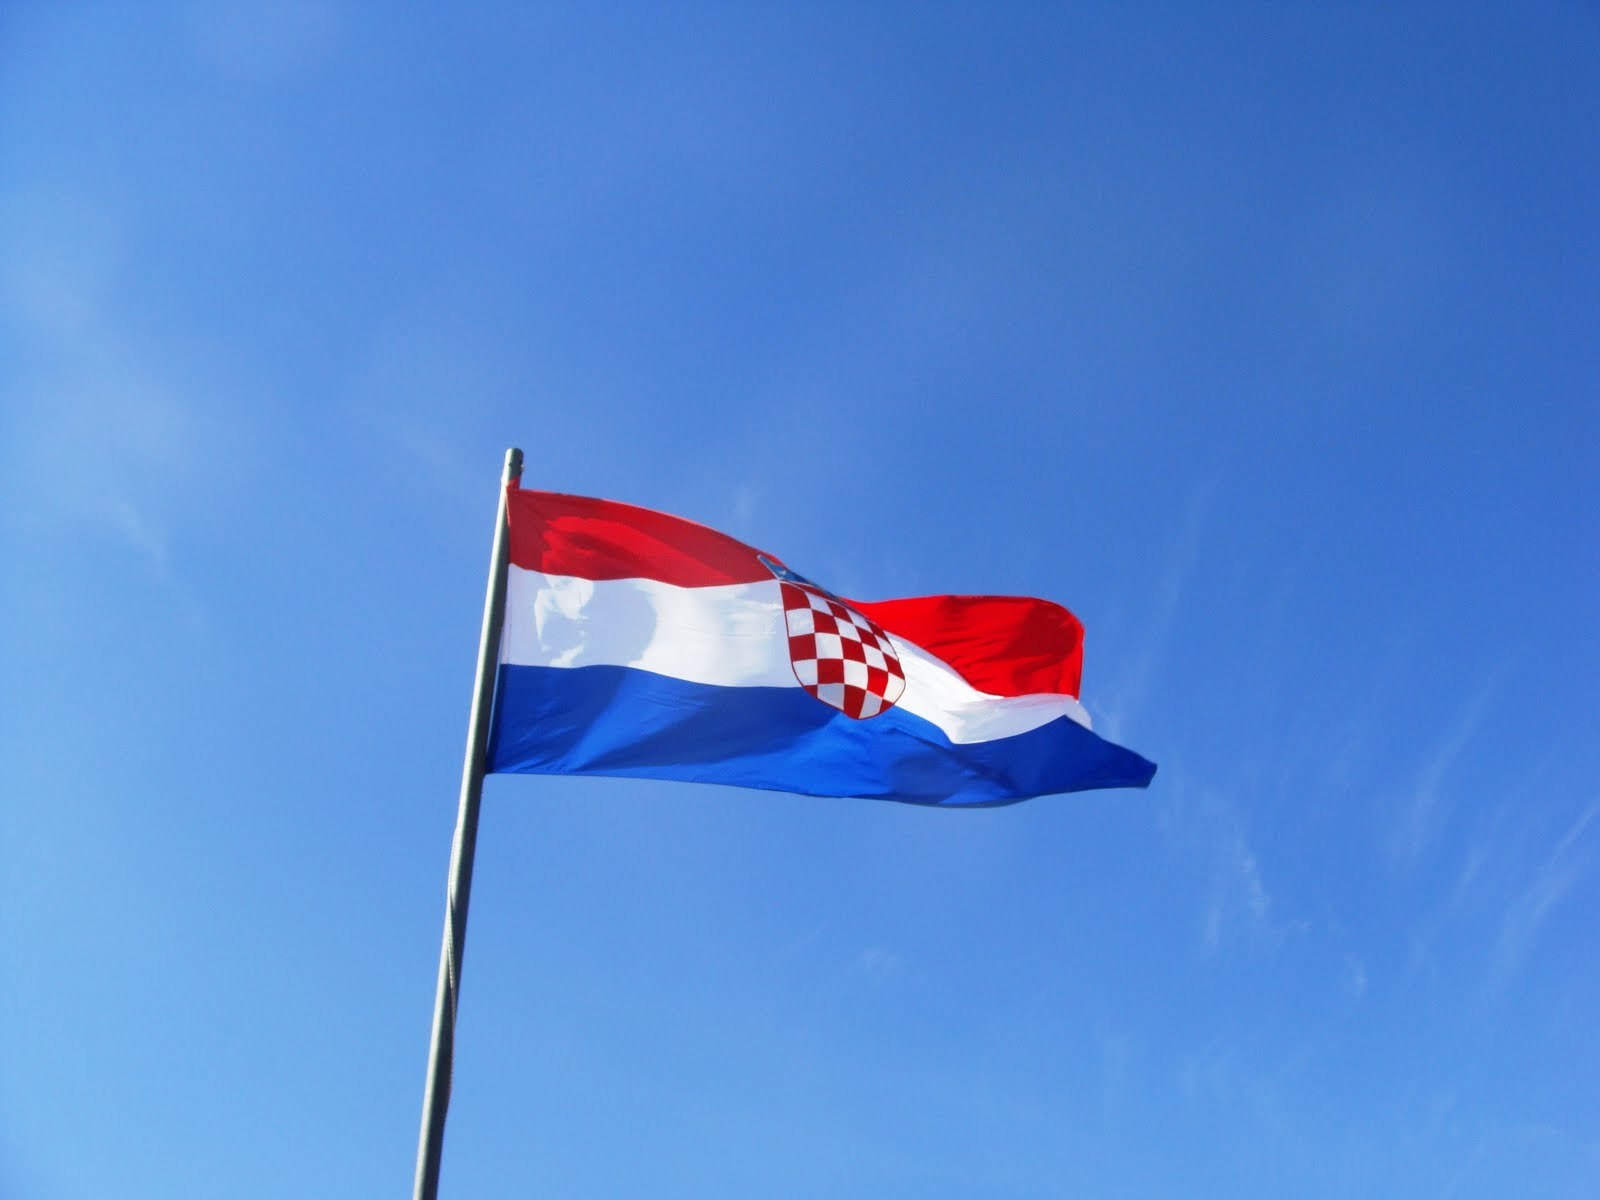 Η Ομάδα Κρατών κατά της Διαφθοράς θεωρεί αναξιόπιστο το δικαστικό σύστημα της Κροατίας